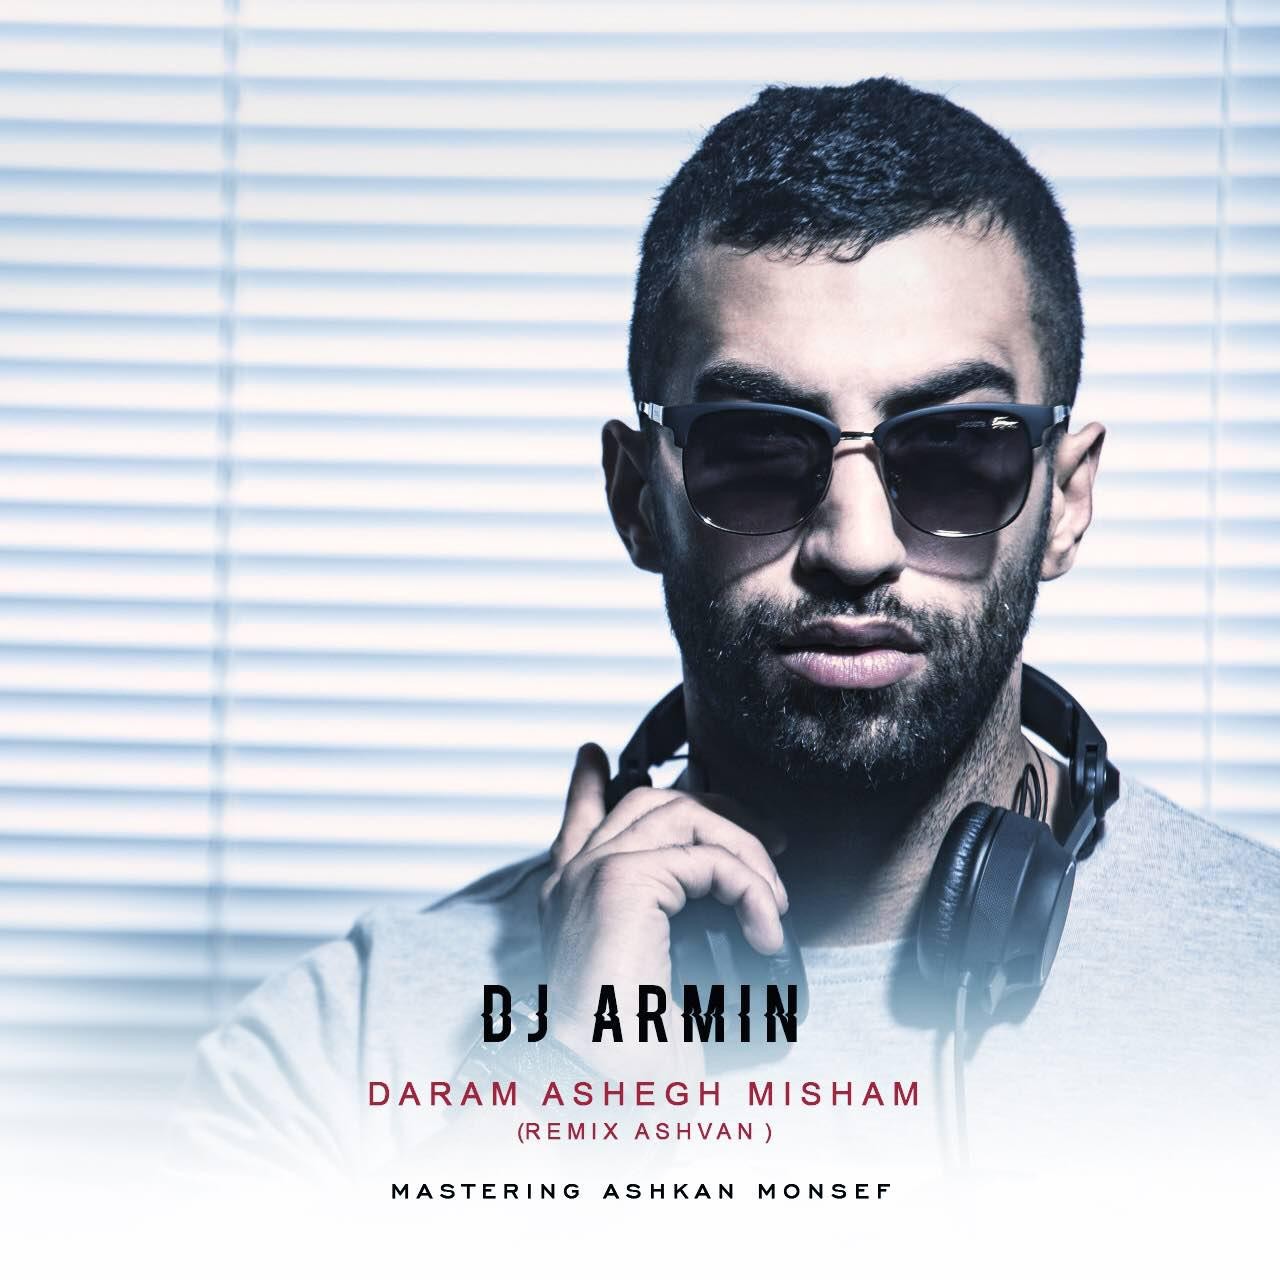 Dj Armin – Daram Ashegh Misham (Remix Ashvan)